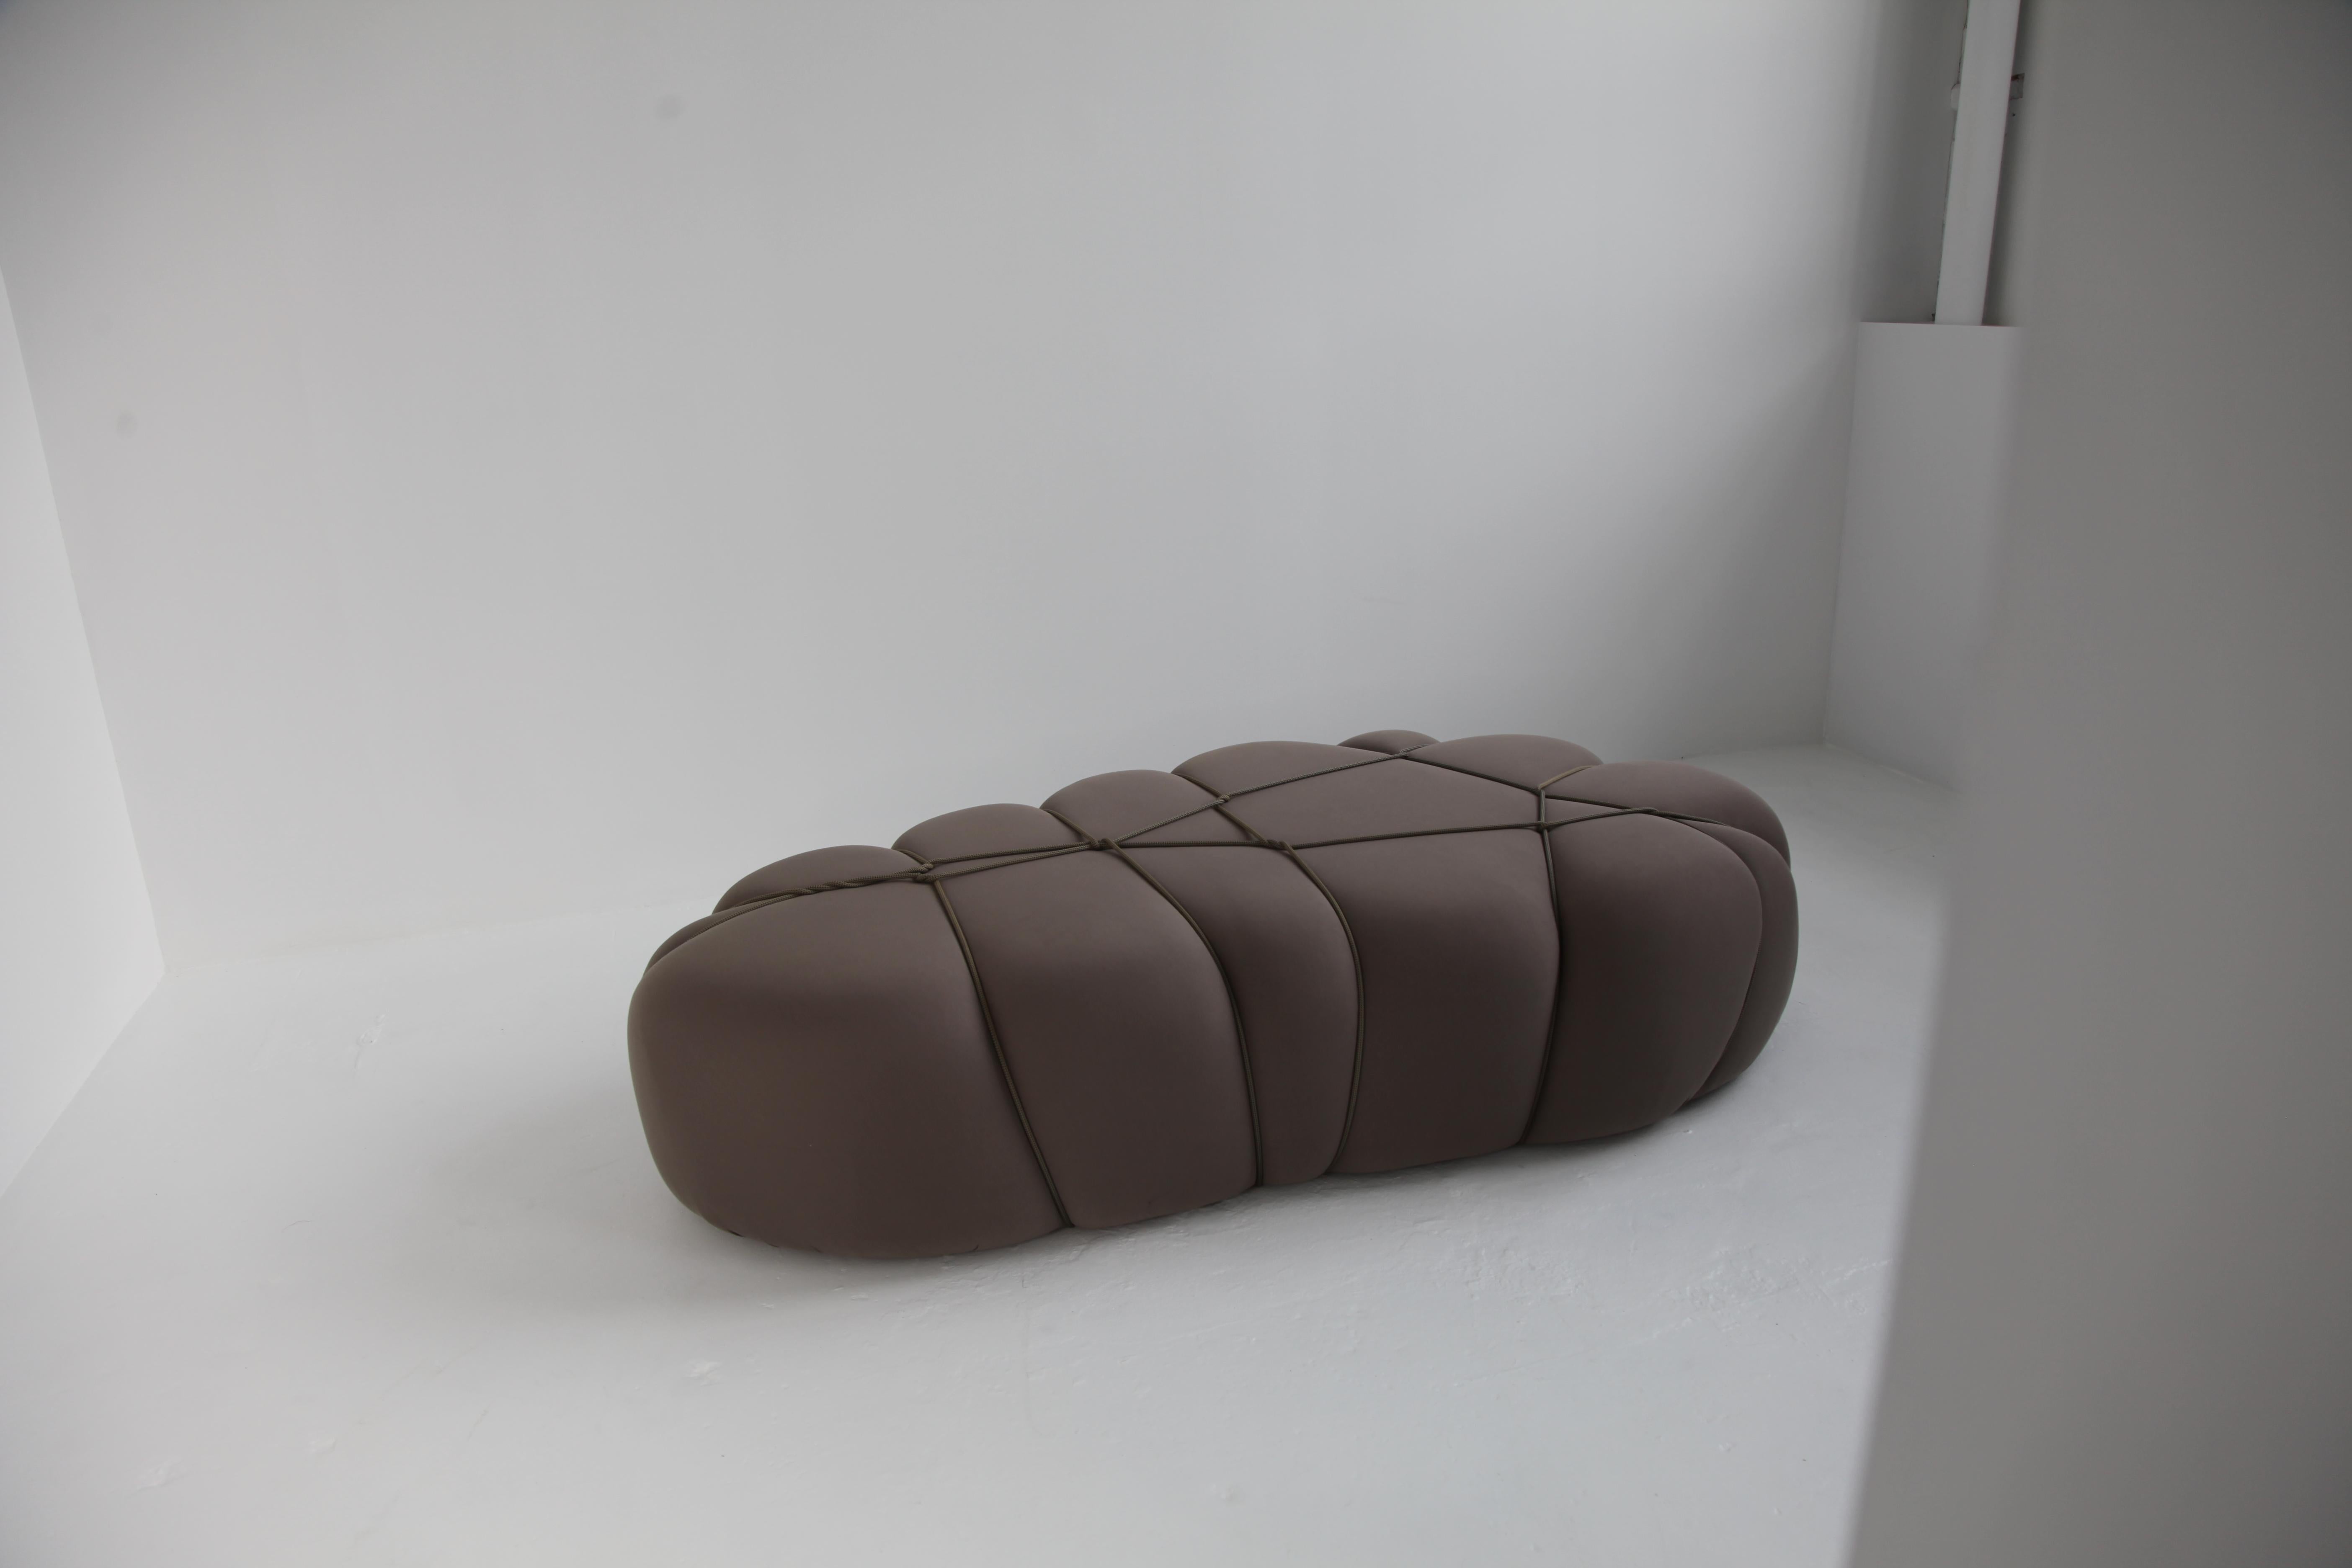 Les poufs sont une forme de mobilier modulaire conçu à la fois pour la détente et l'assise. Ils sont fabriqués en mousse souple recouverte d'un tissu épais et élastique qui dissimule toutes les coutures visibles. S'inspirant de l'art complexe du